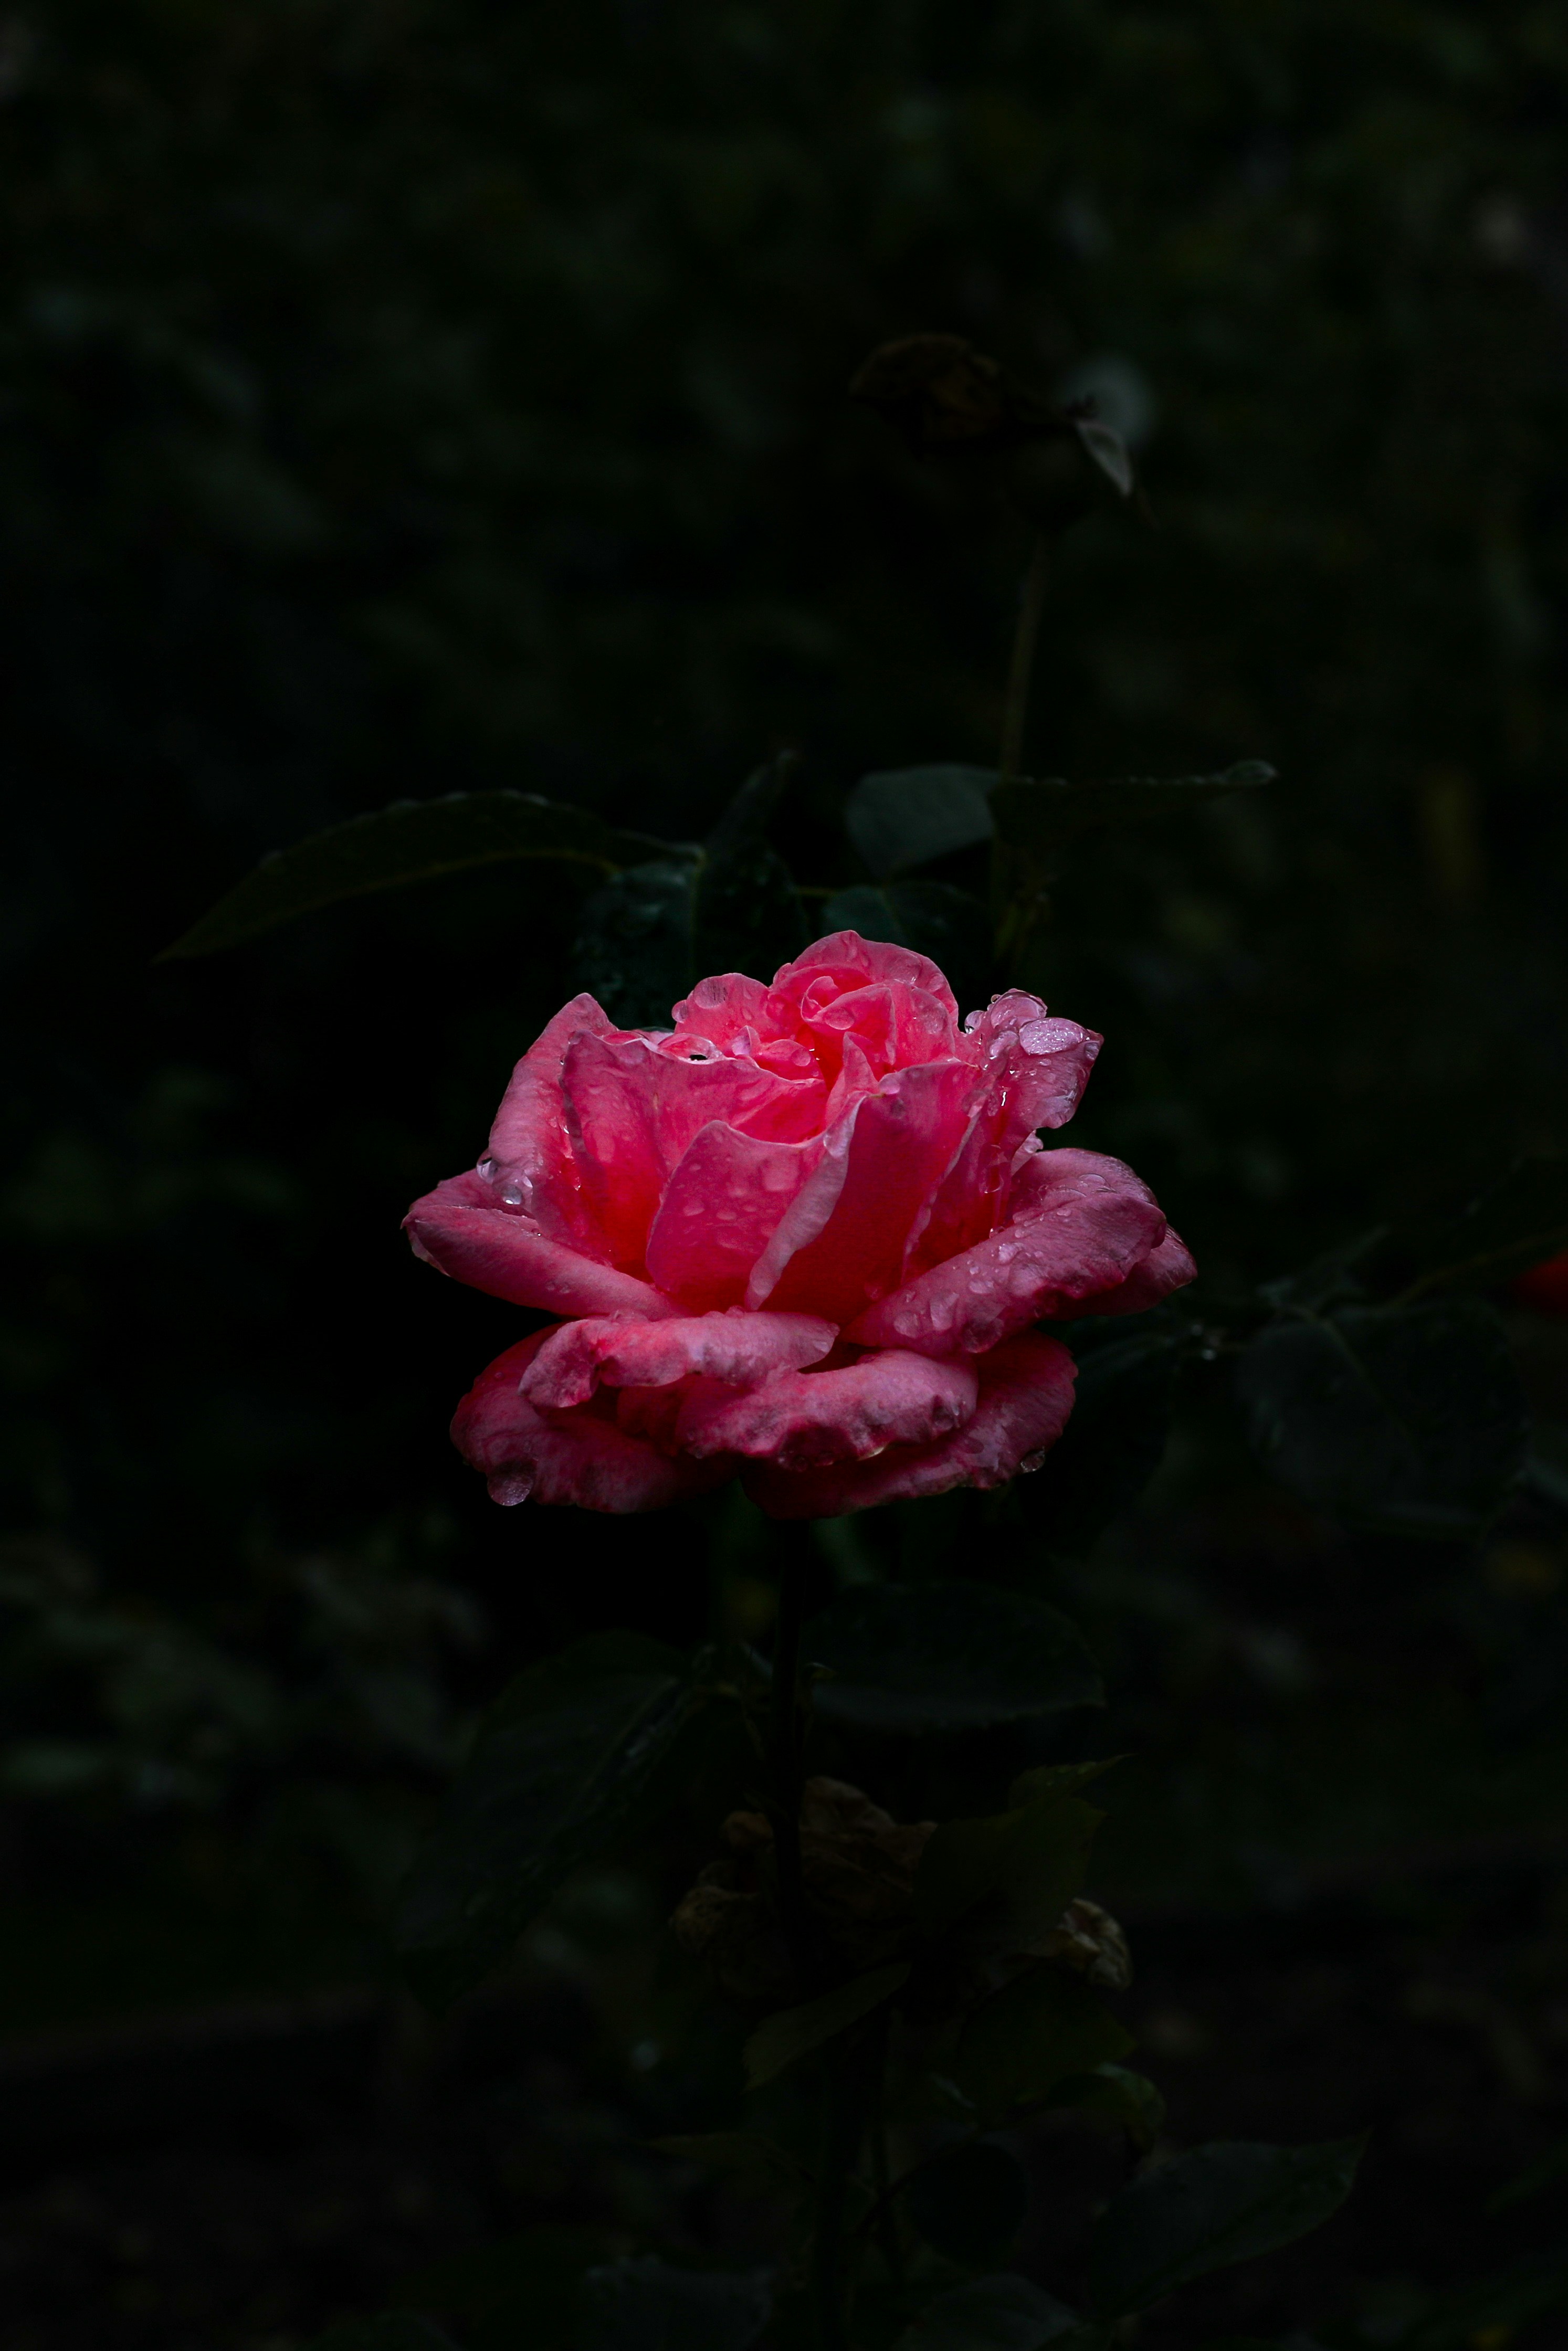 розовая роза в саду